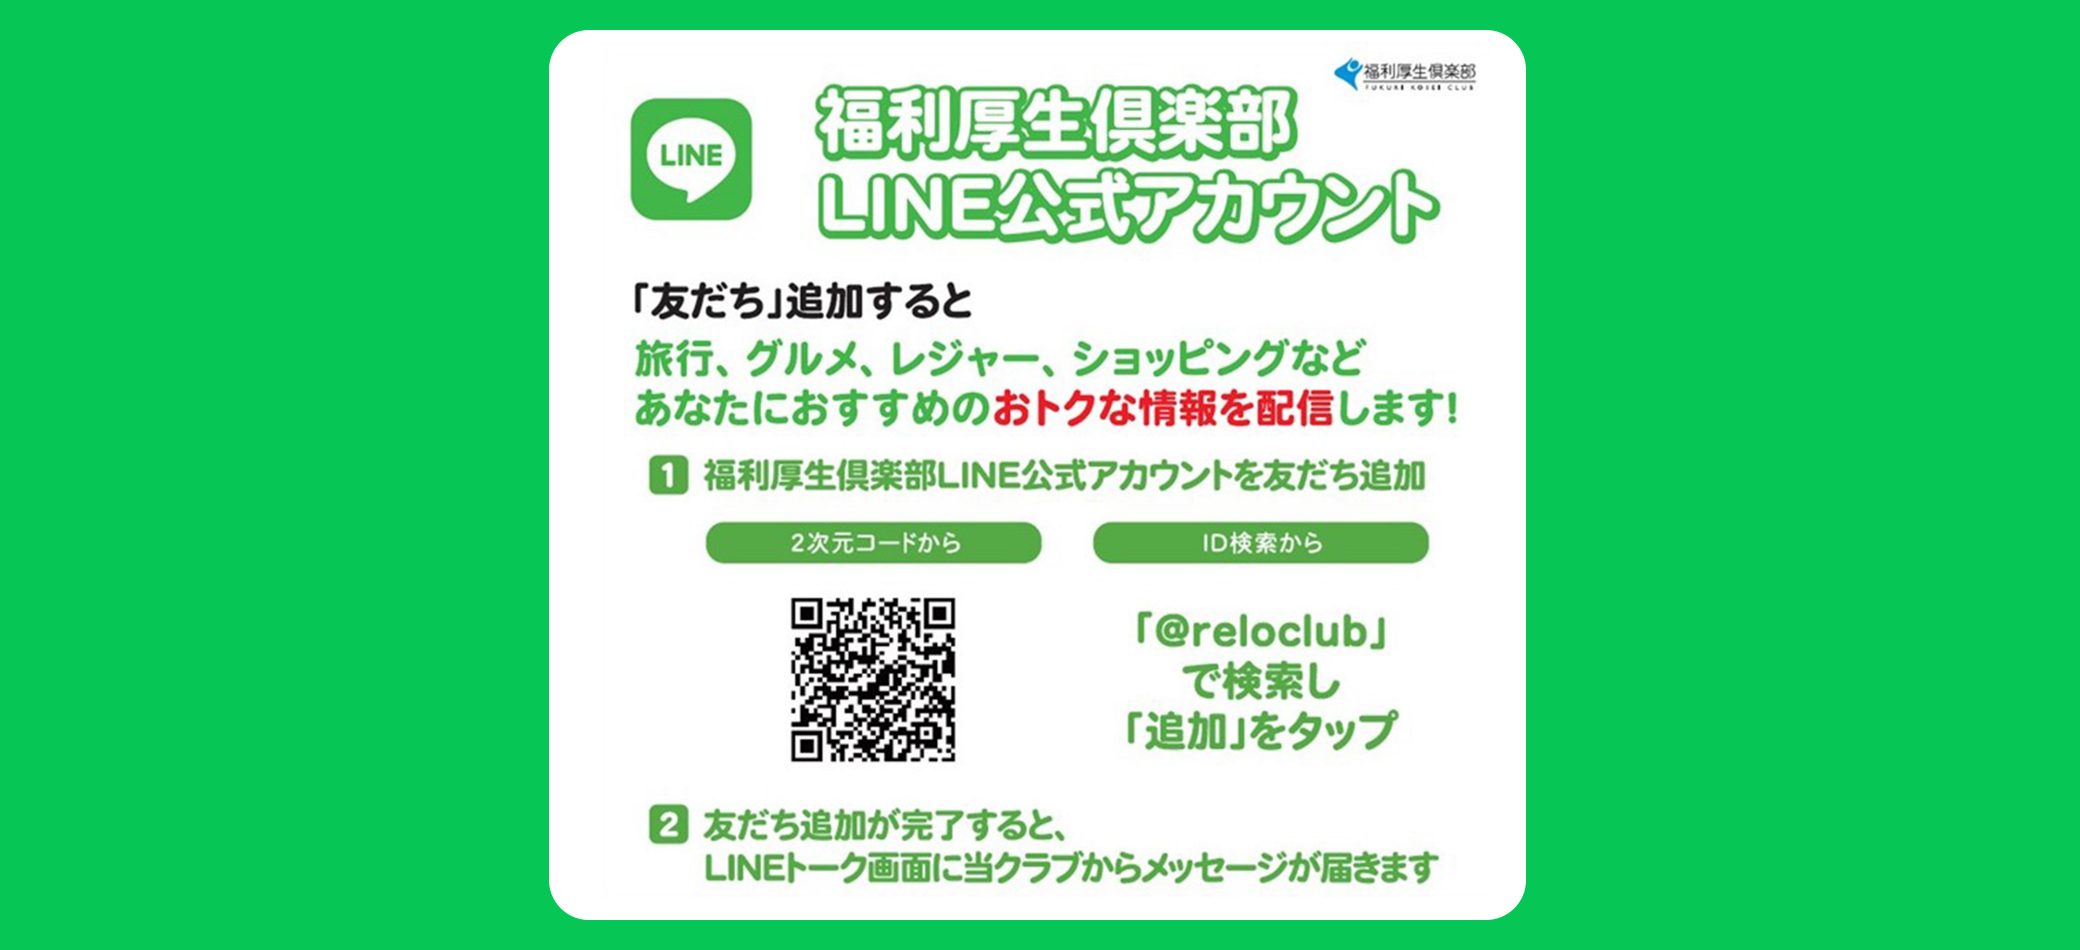 福利厚生倶楽部のLINE公式アカウント